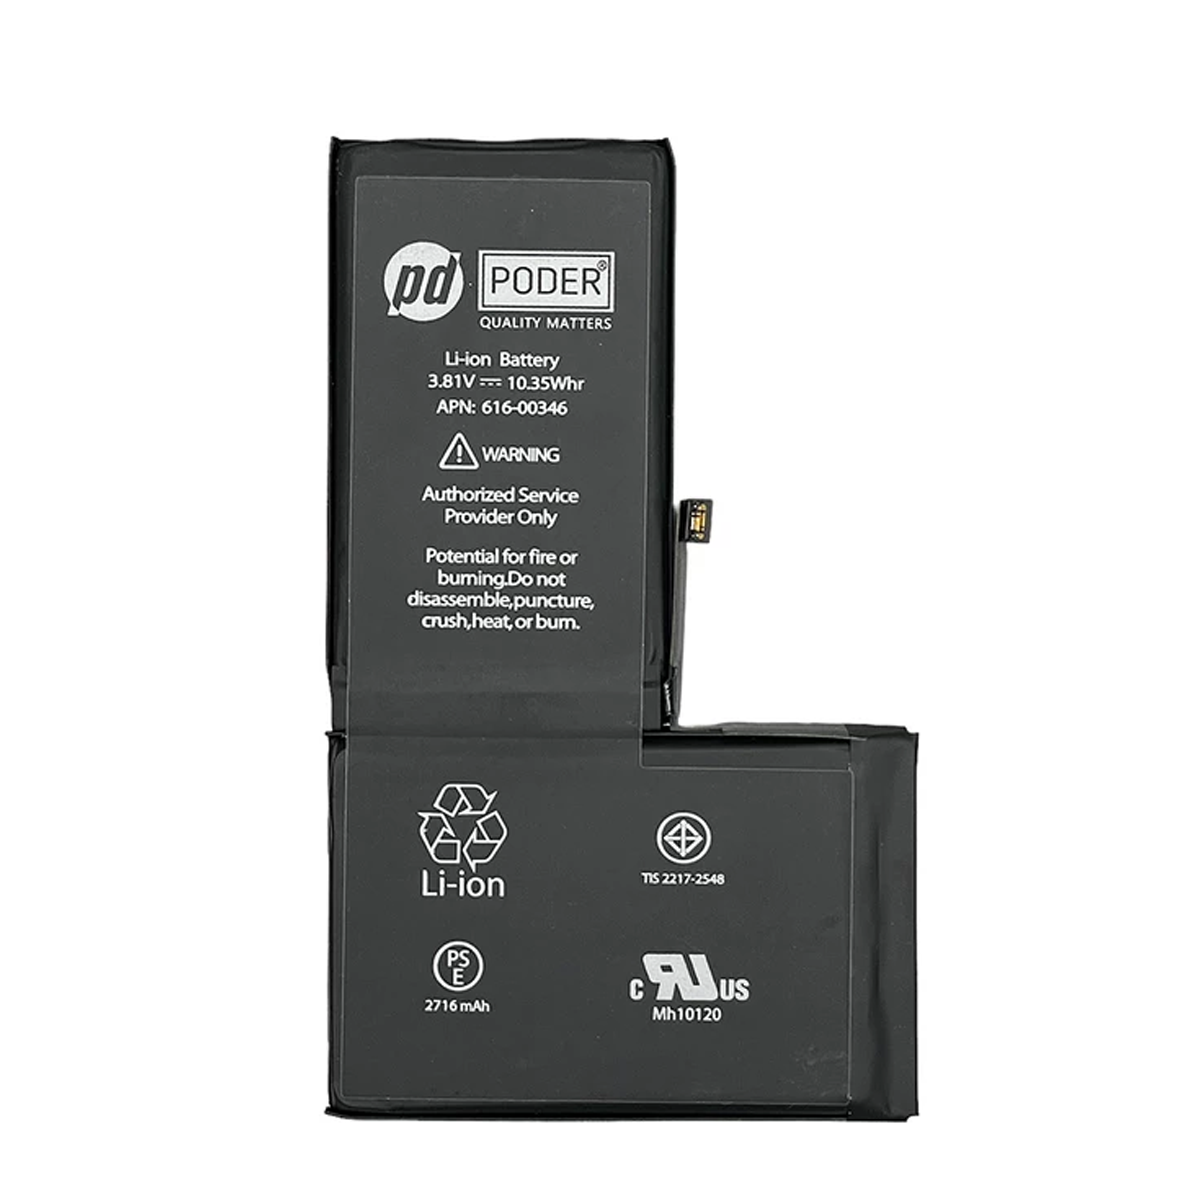 باتری موبایل پودر مدل 02088 مناسب برای گوشی موبایل اپل iPhone X	-small-image